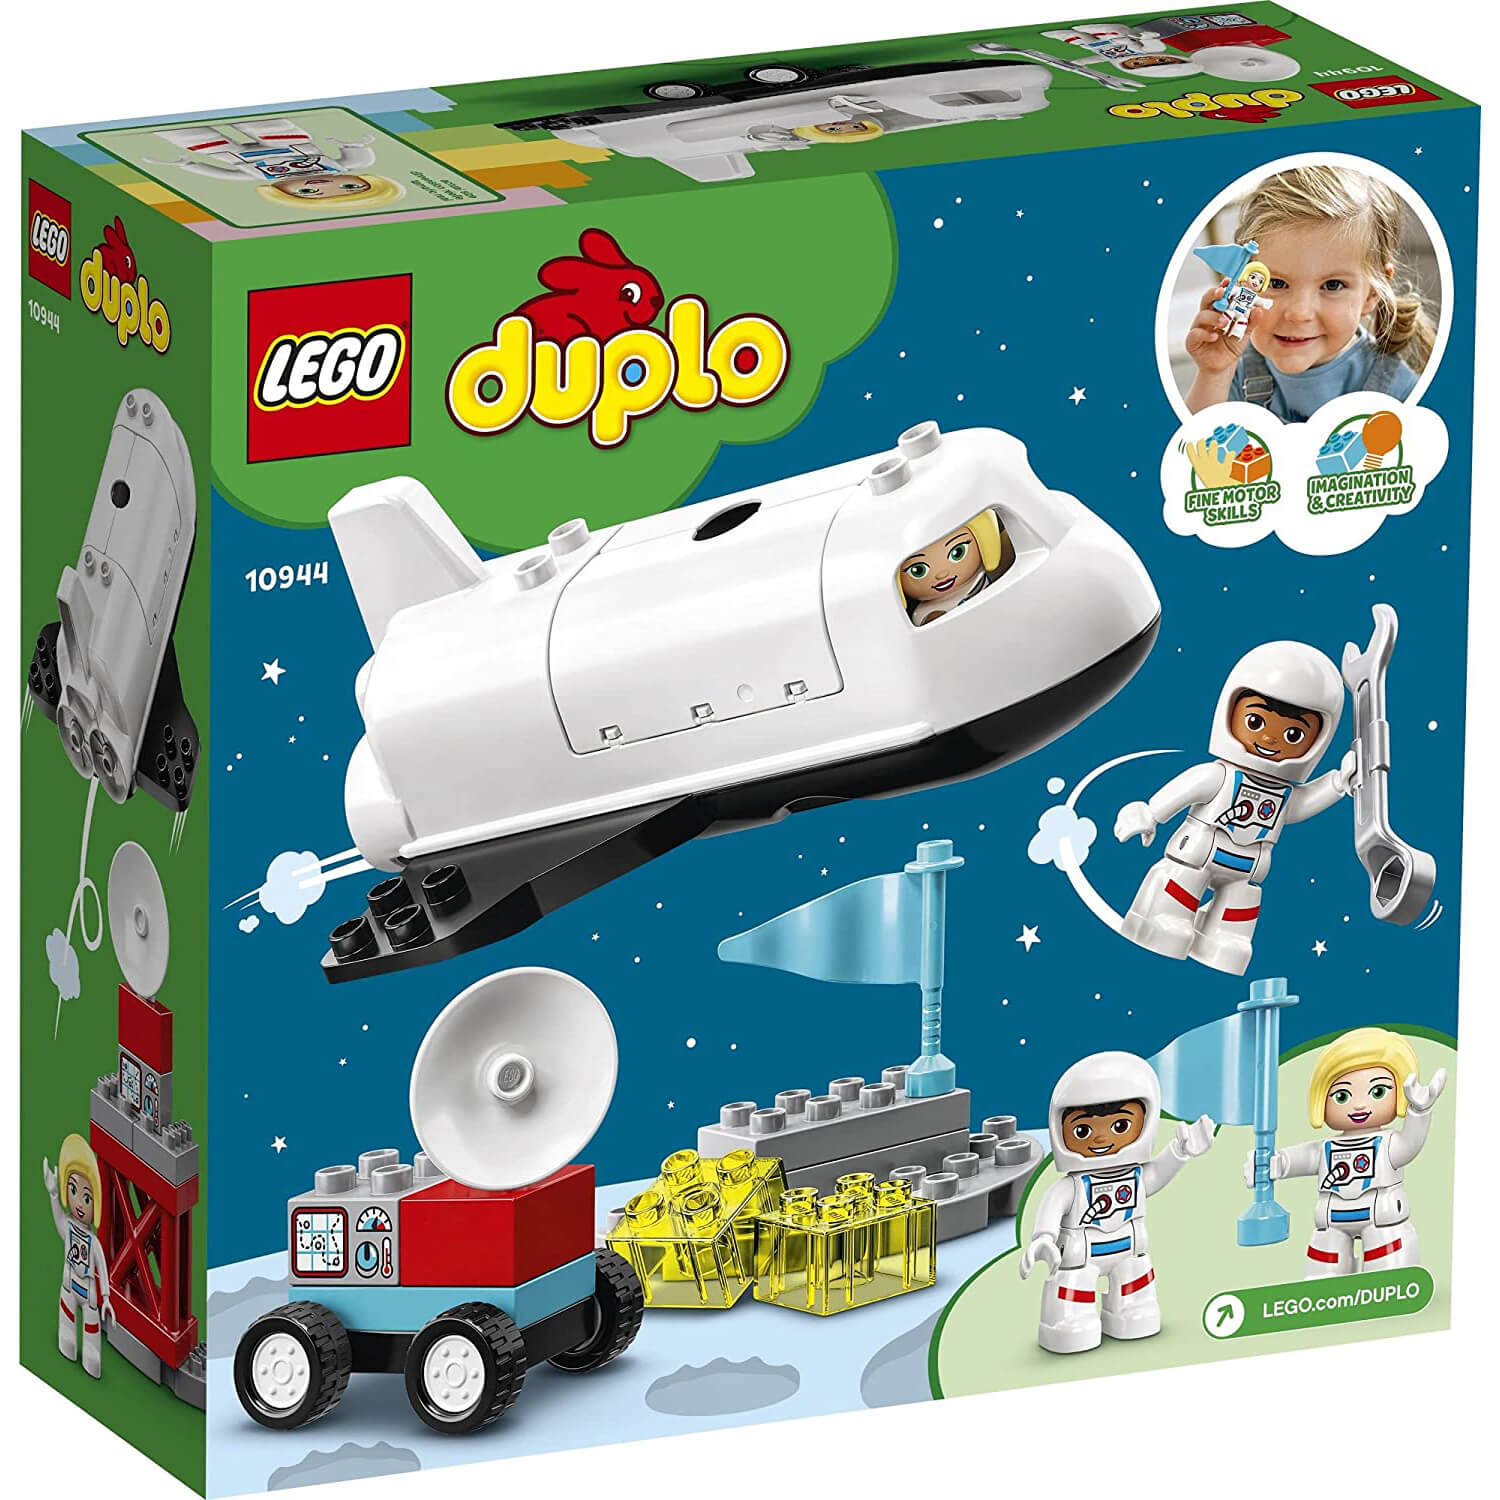 LEGO DUPLO Space Shuttle Mission 23 Piece Building Set (10944)